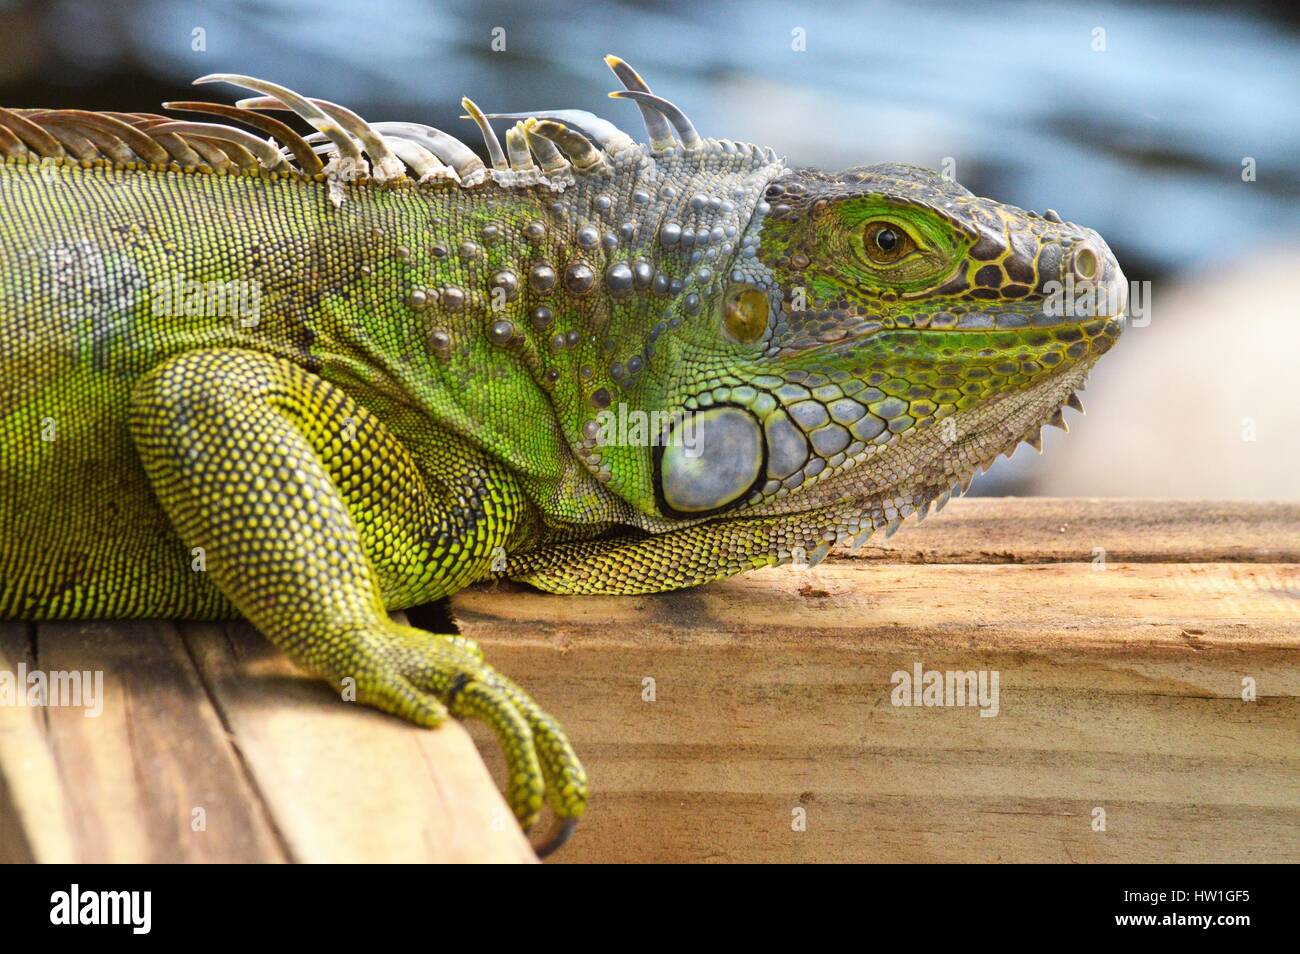 Iguana sunning on  the dock Stock Photo